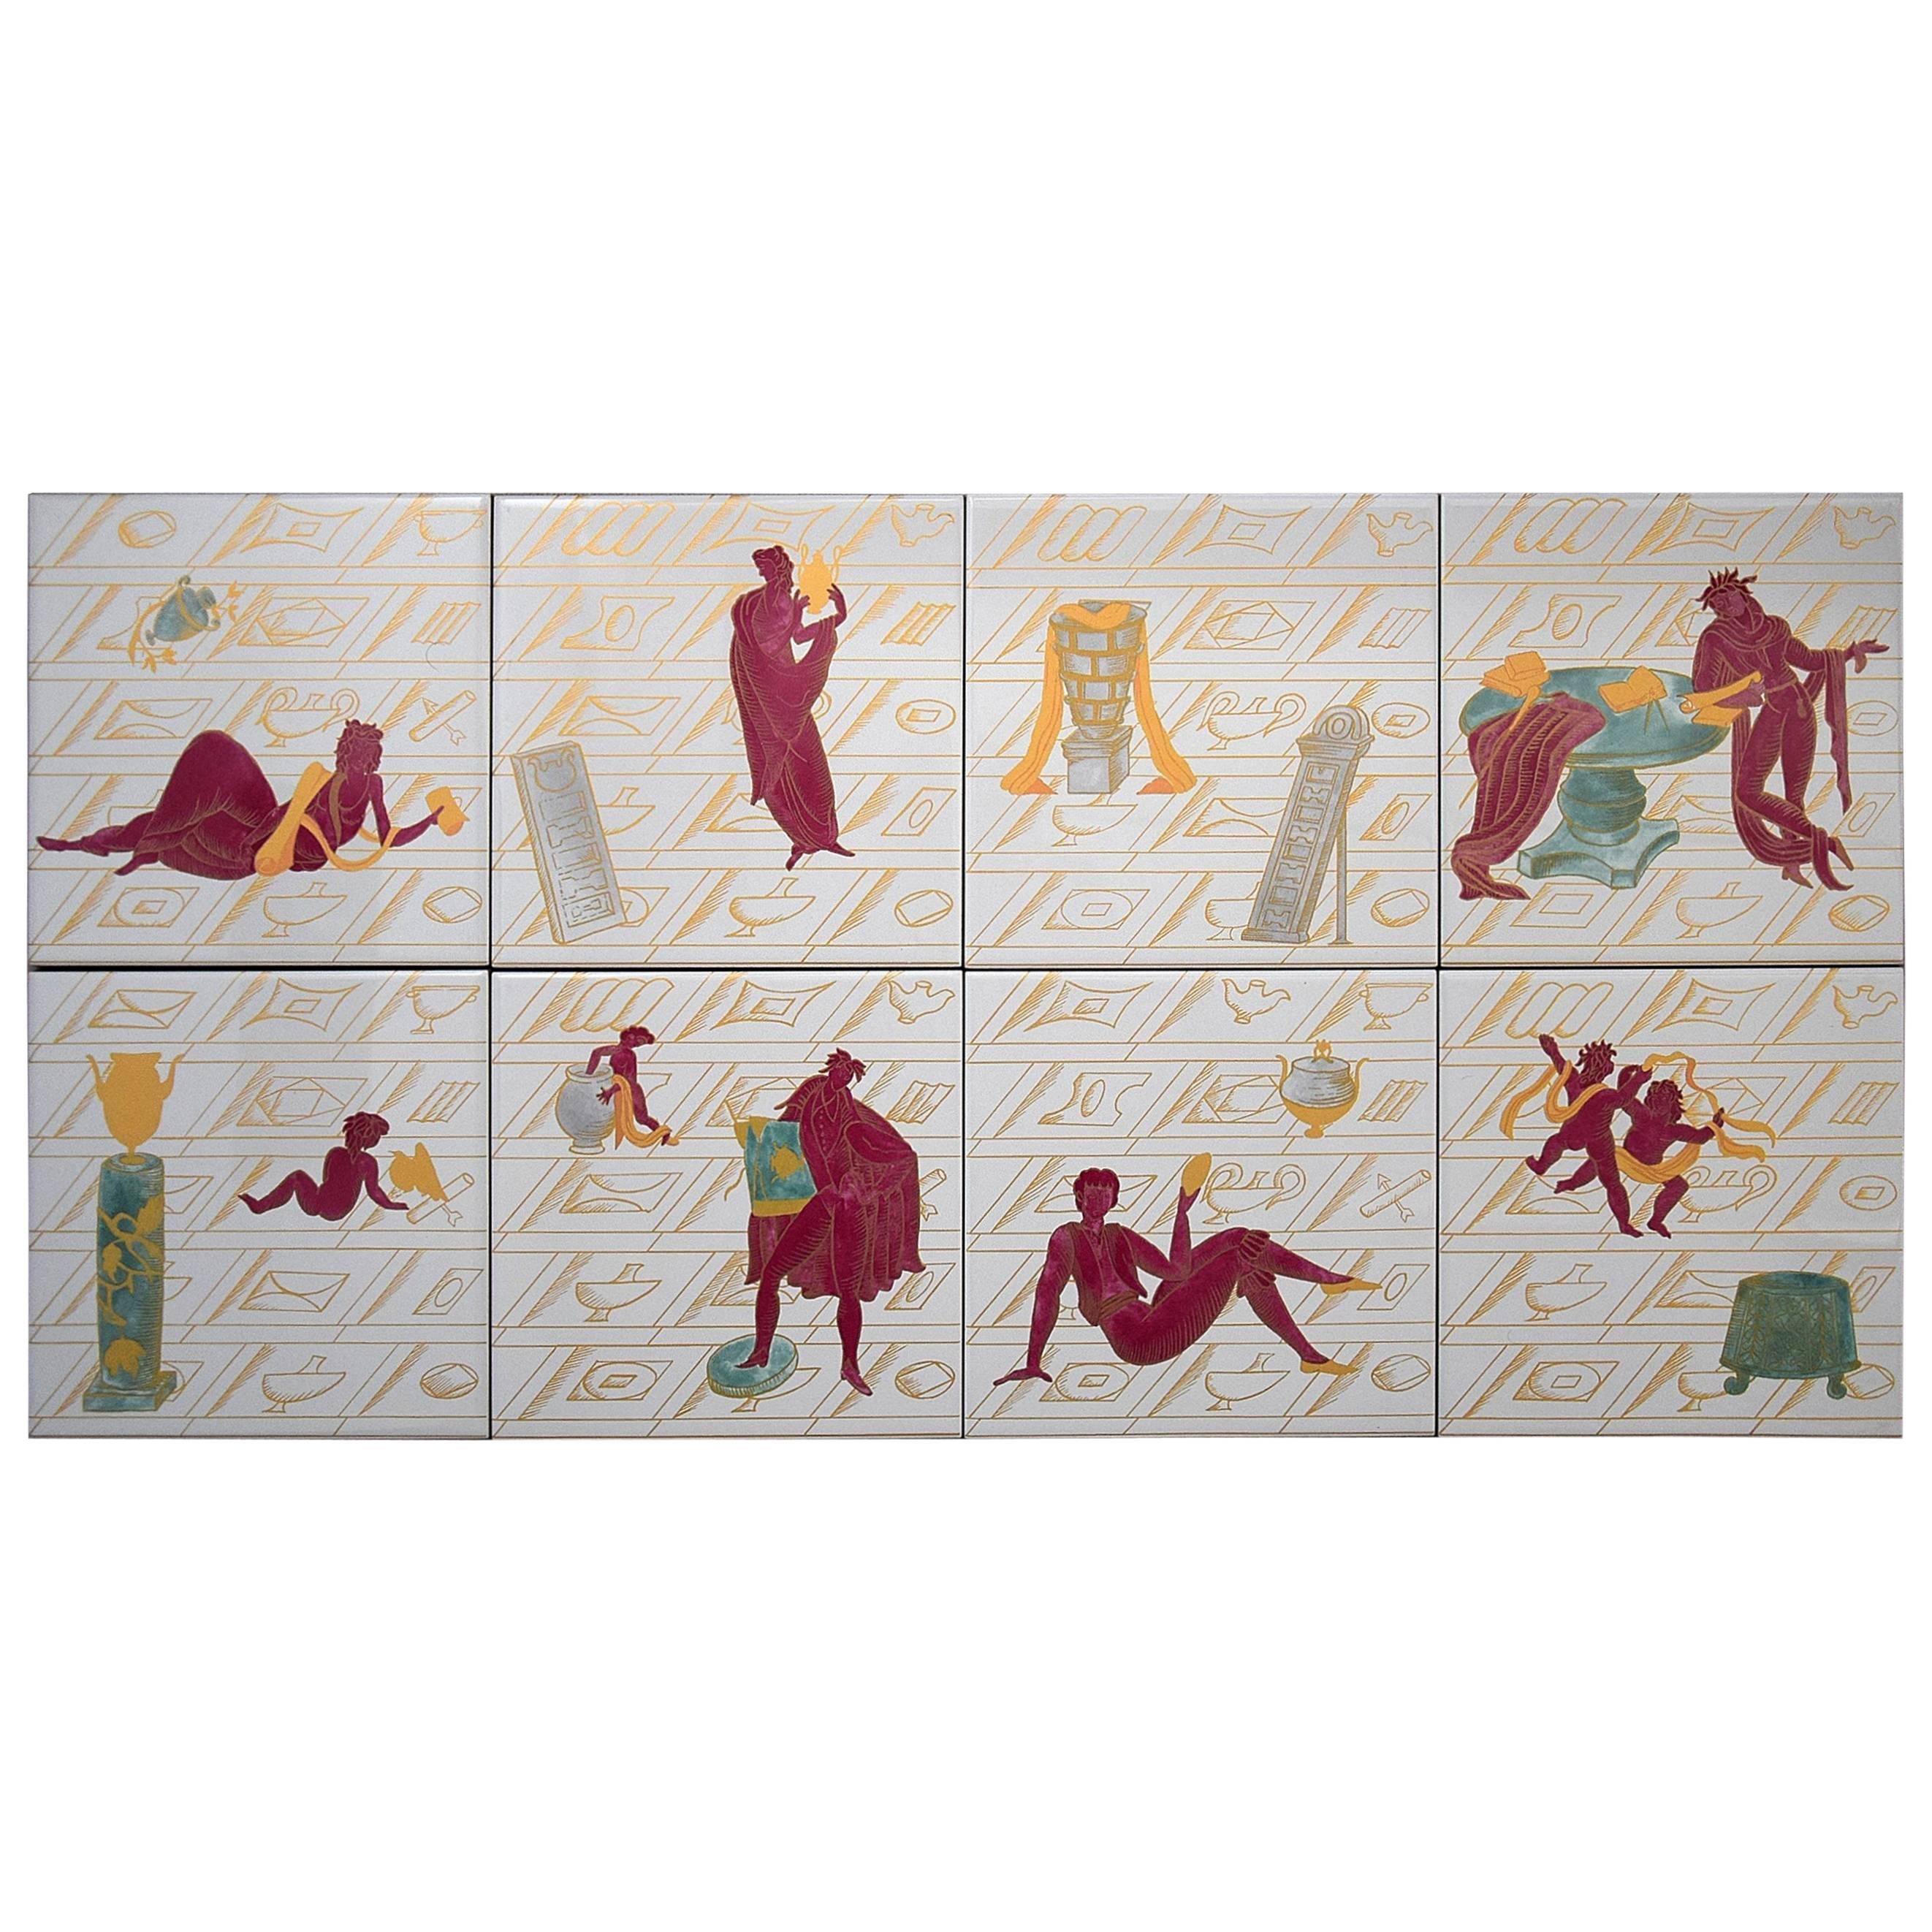 Ceramic Tiles with La Conversazione Classica Designed by Gio Ponti